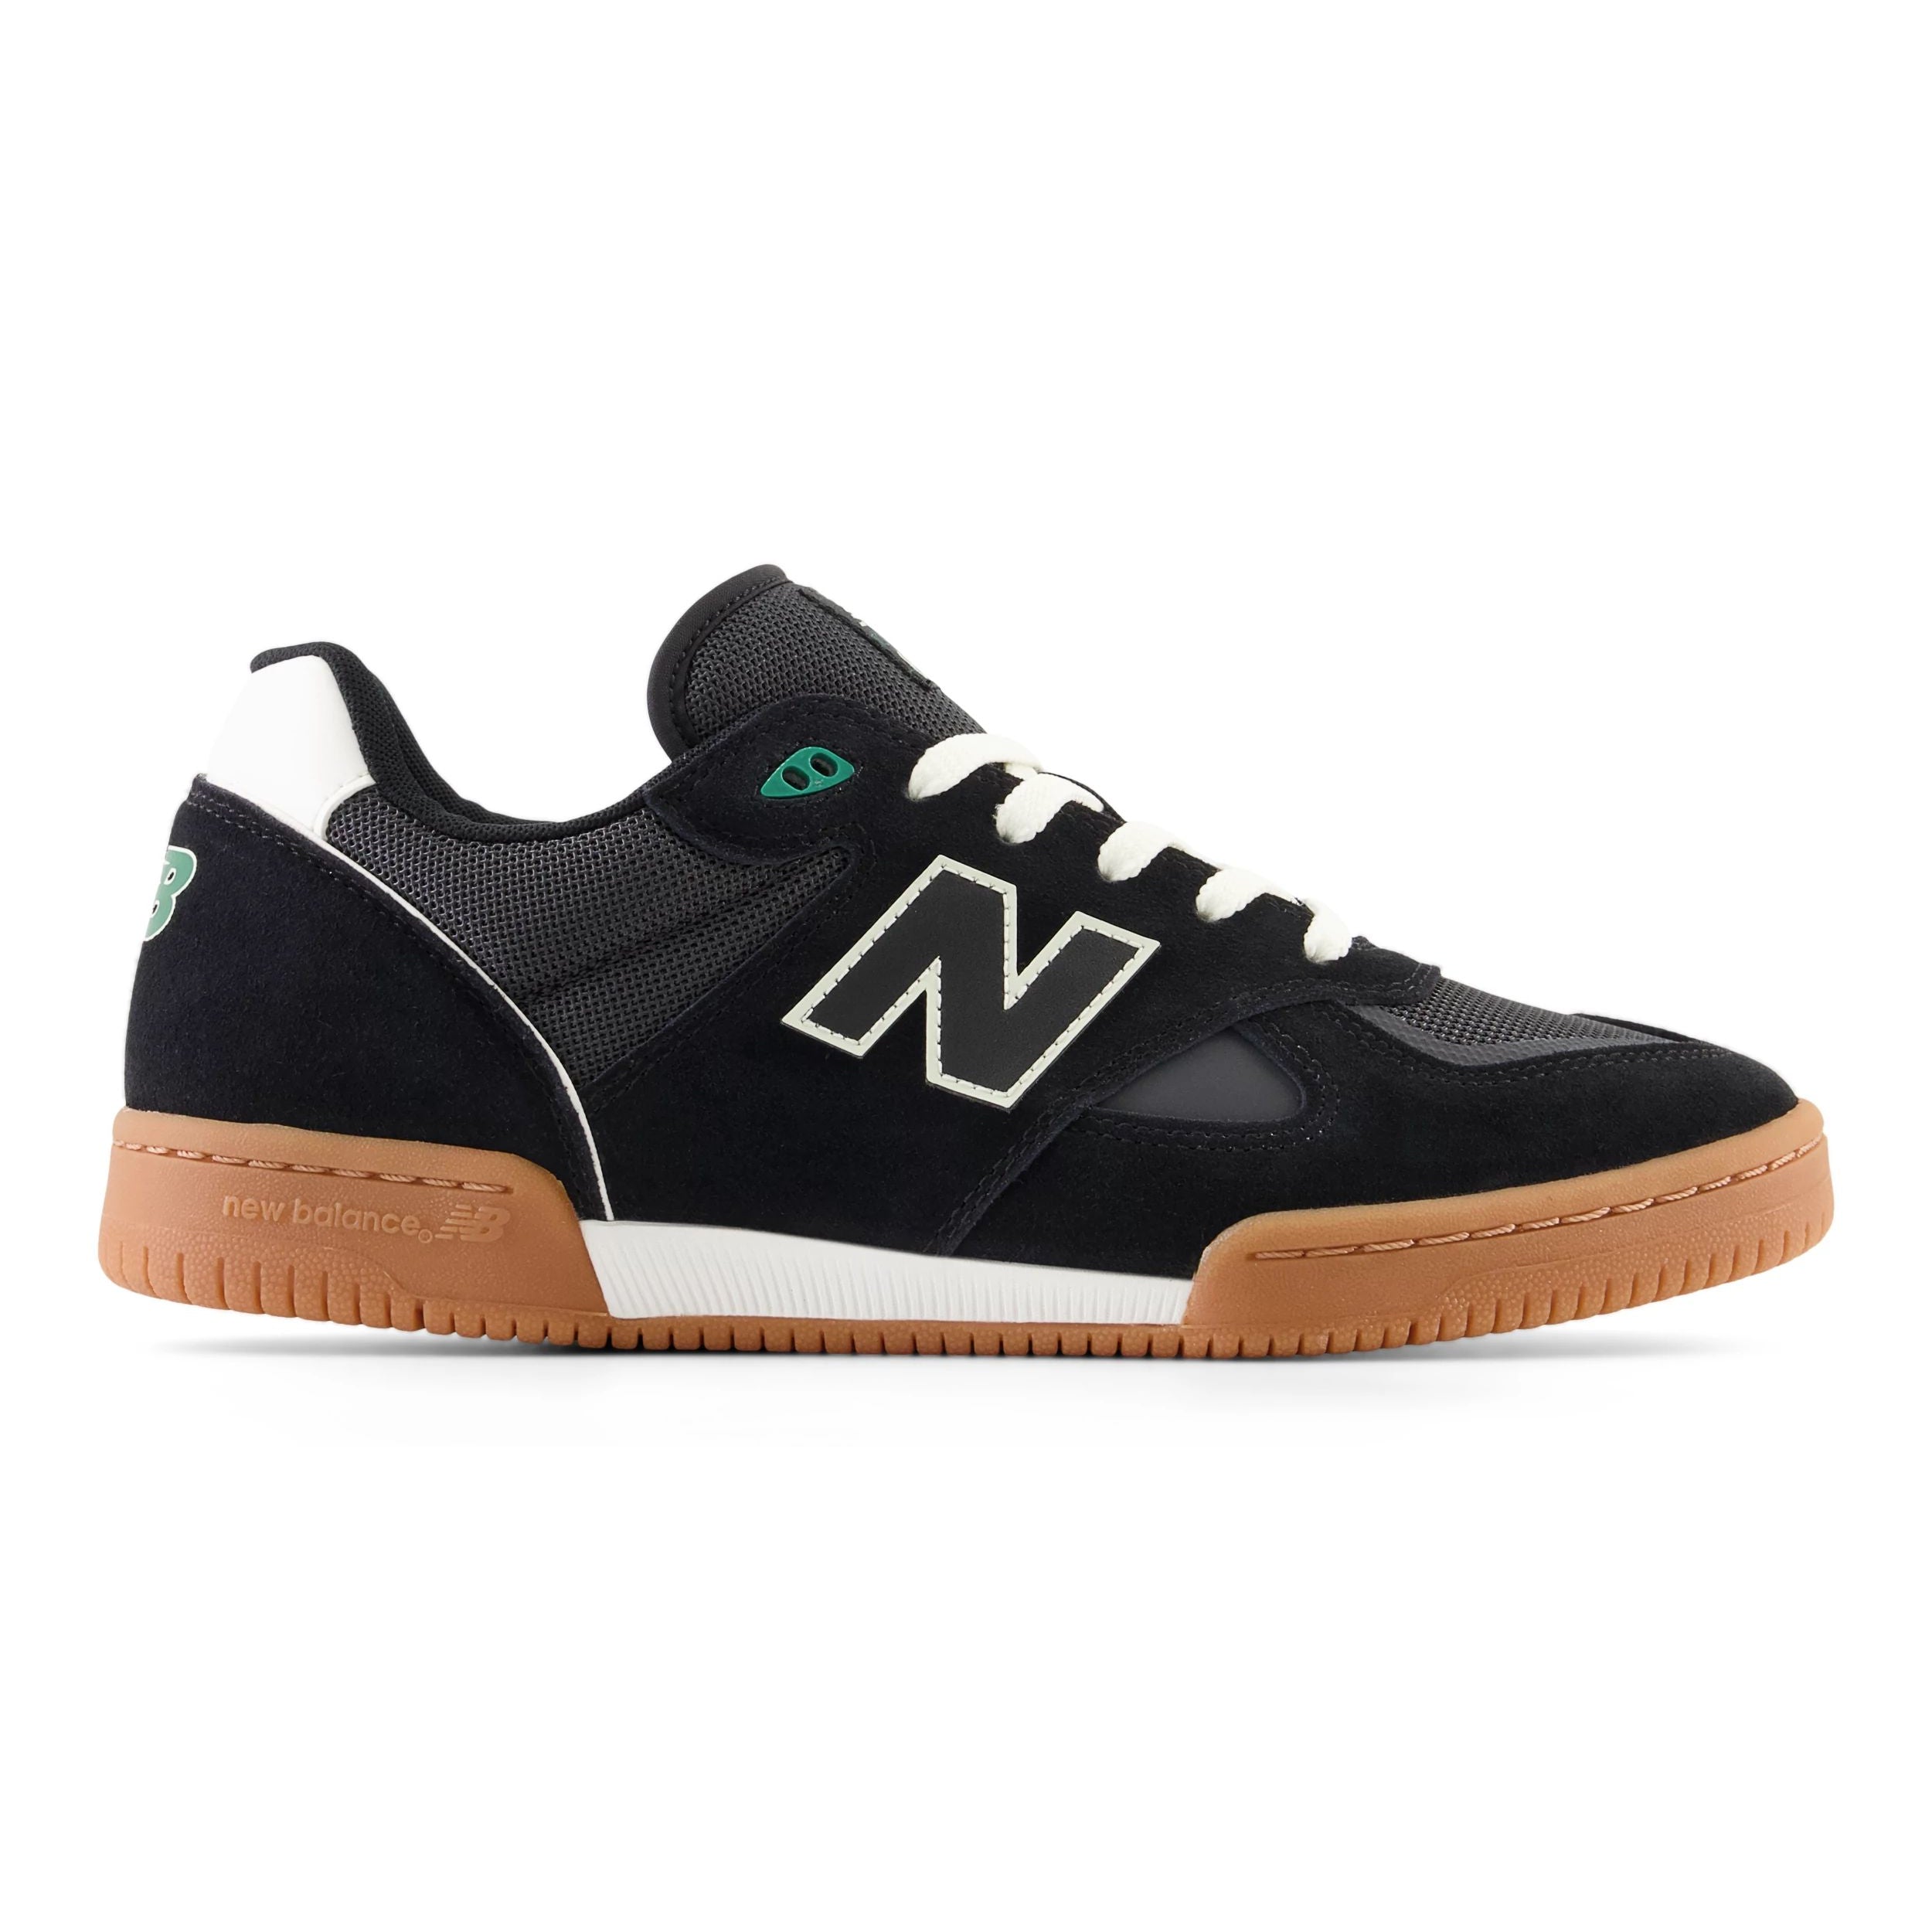 Black/Gum Tom Knox NM600 NB Numeric Skate Shoe